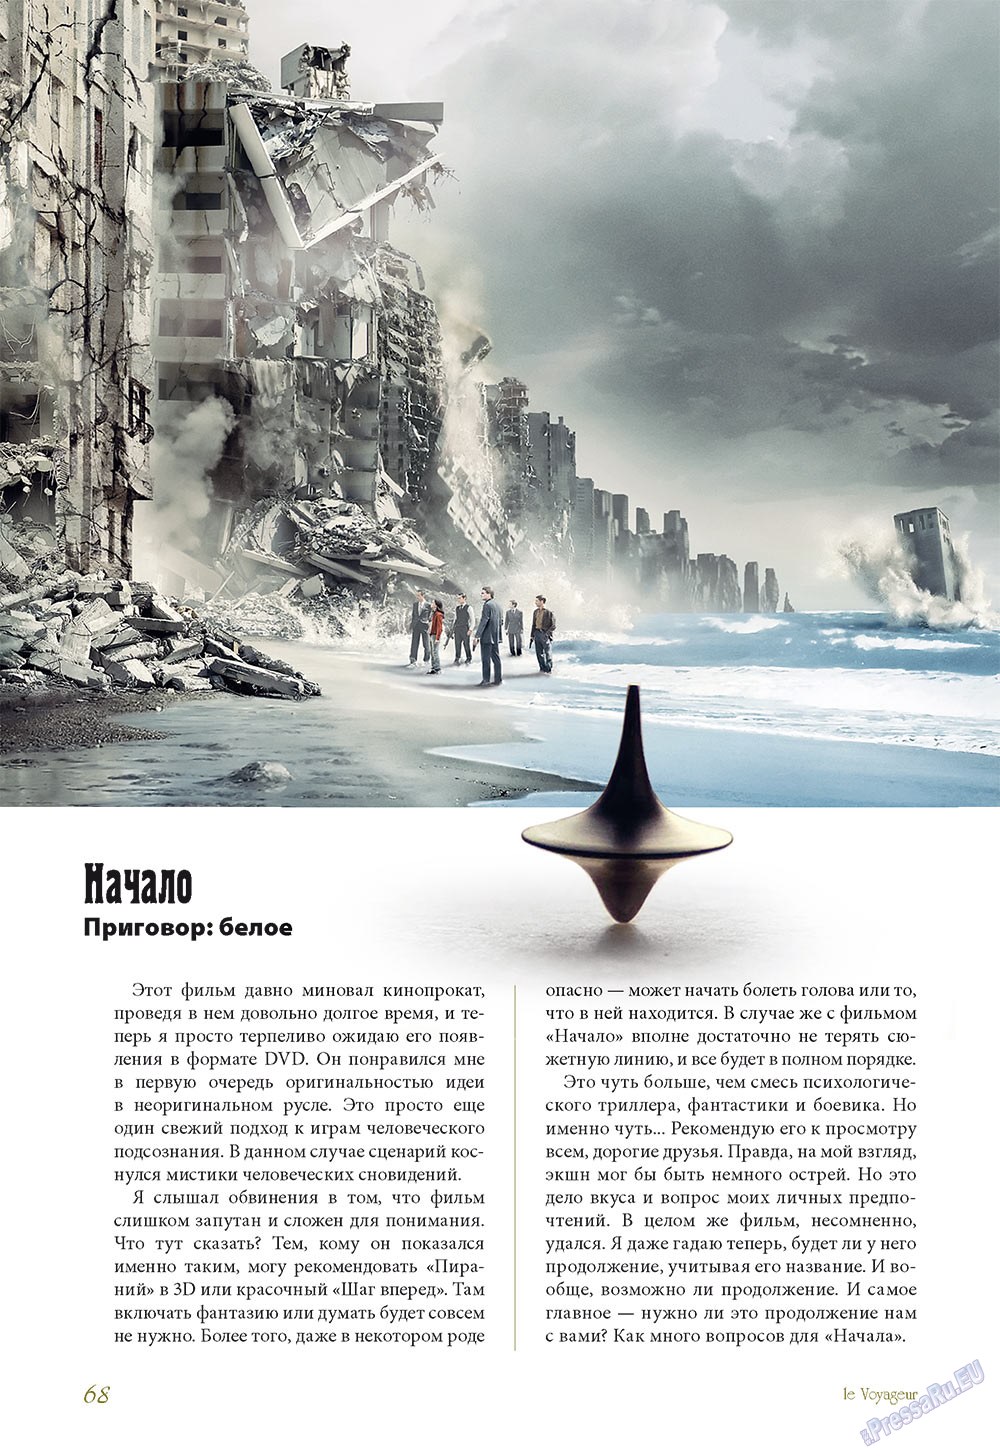 Le Voyageur (журнал). 2010 год, номер 13, стр. 70